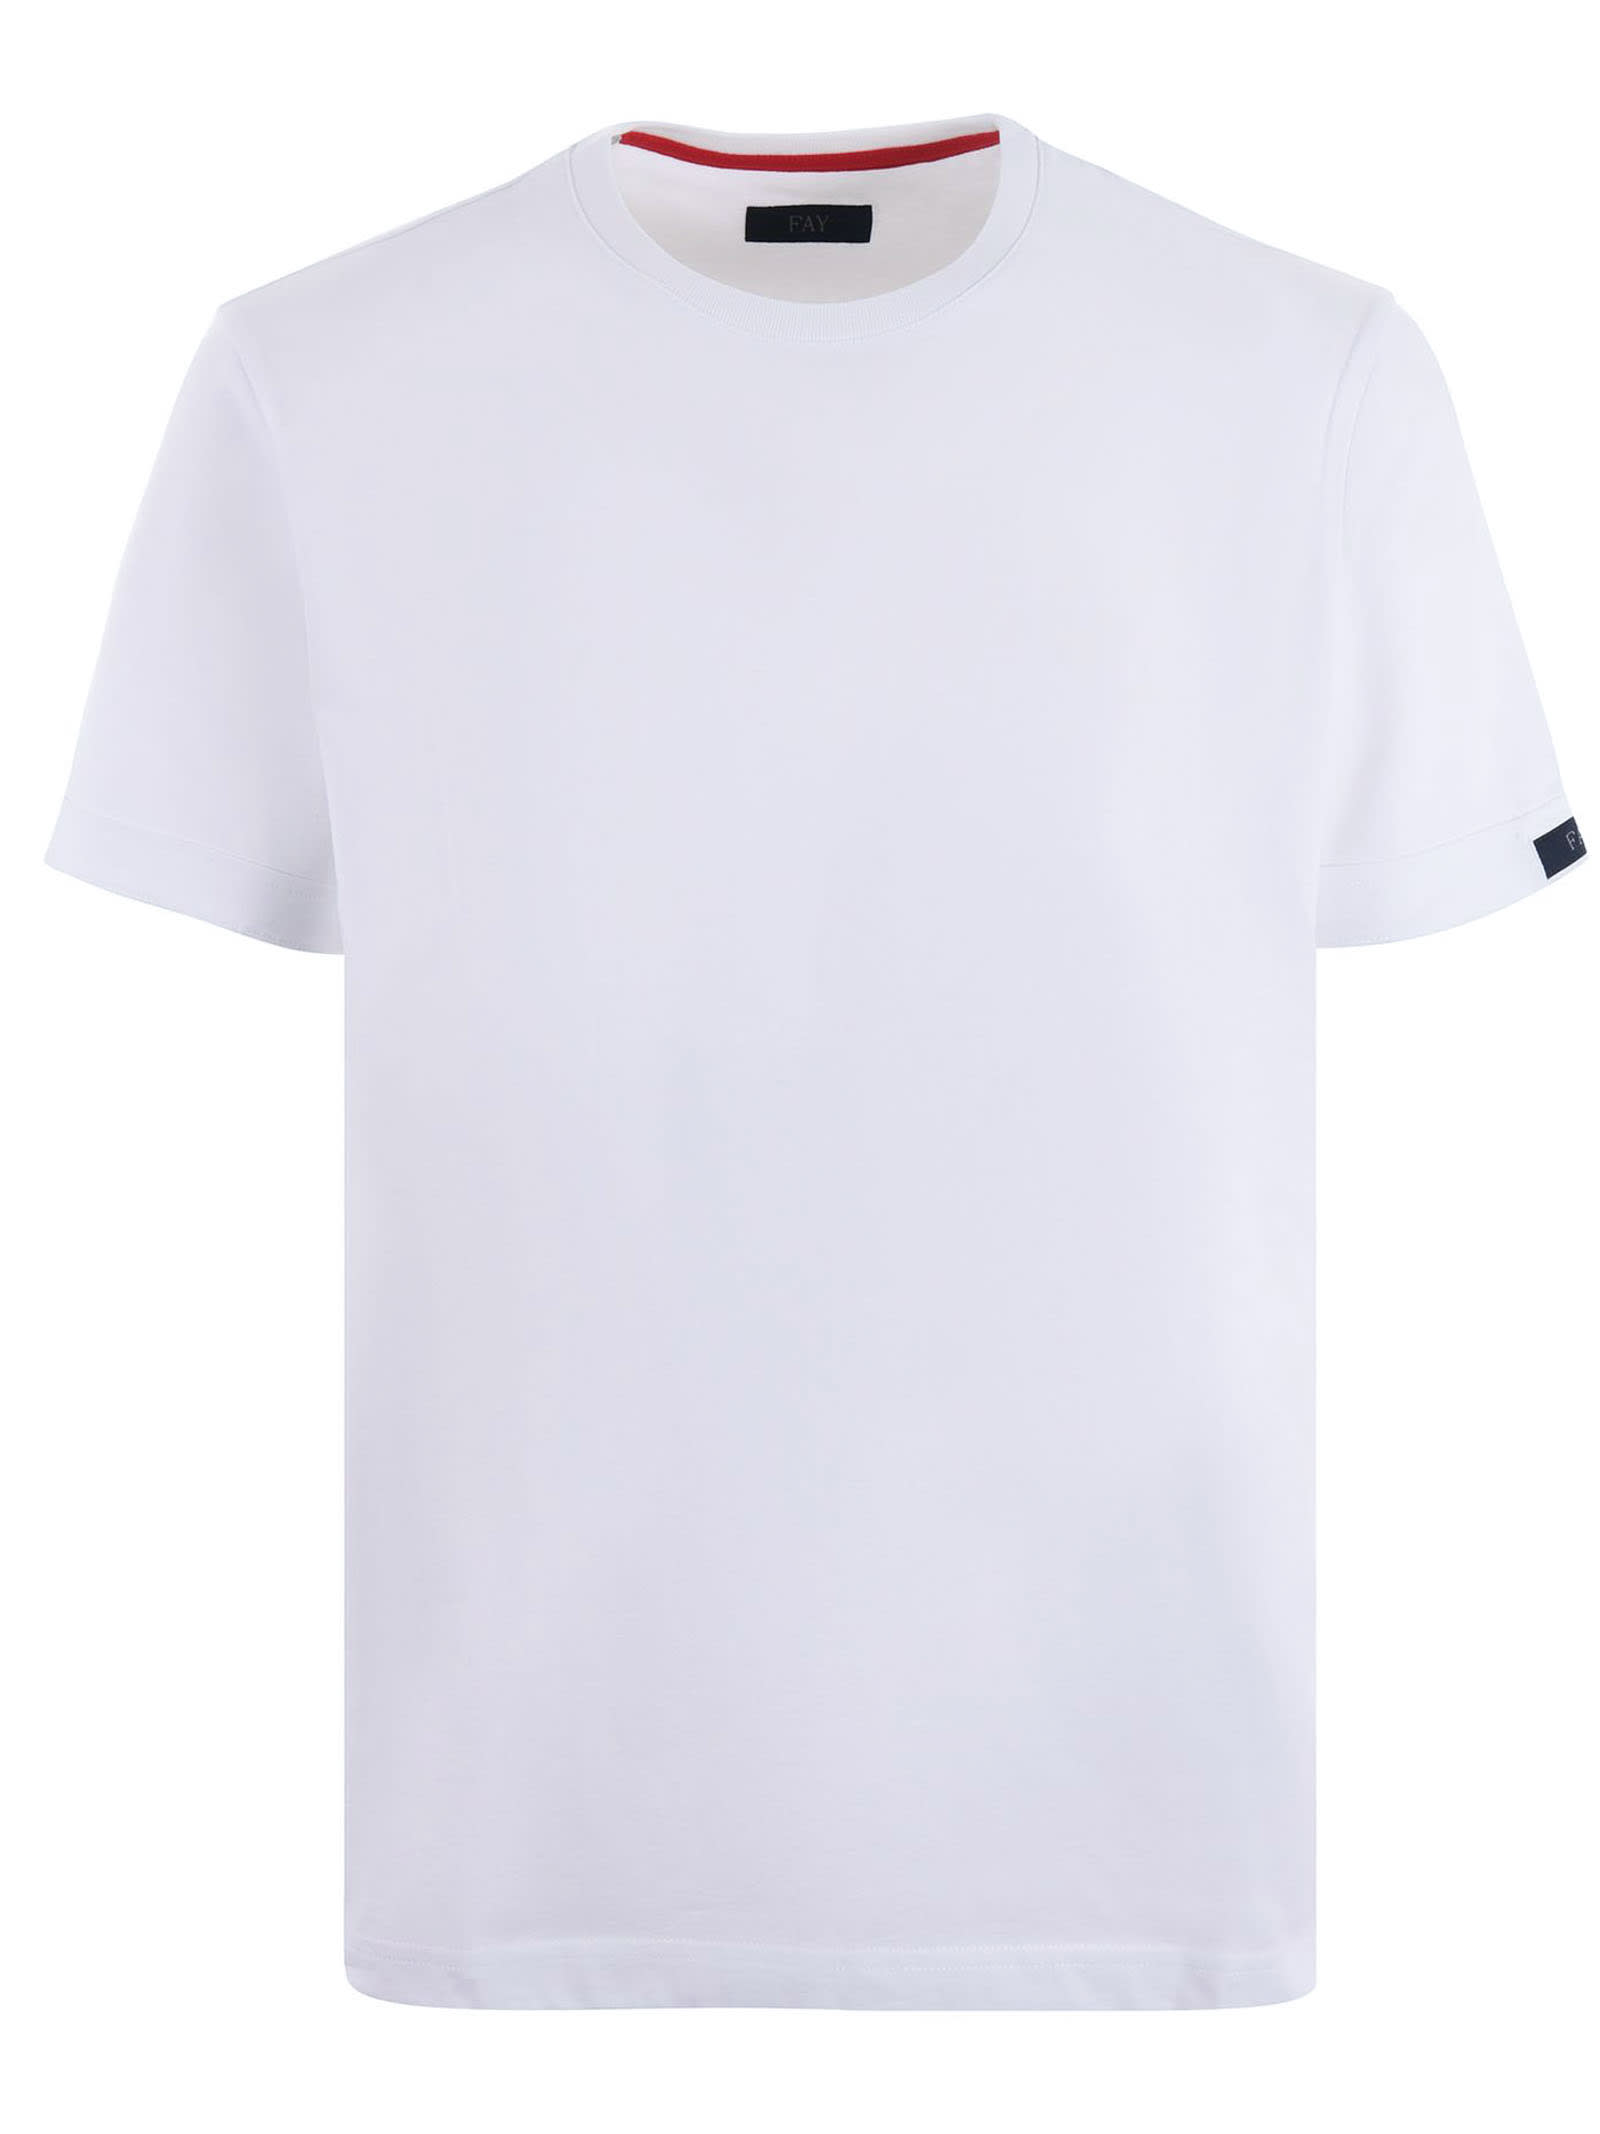 Shop Fay White Cotton T-shirt